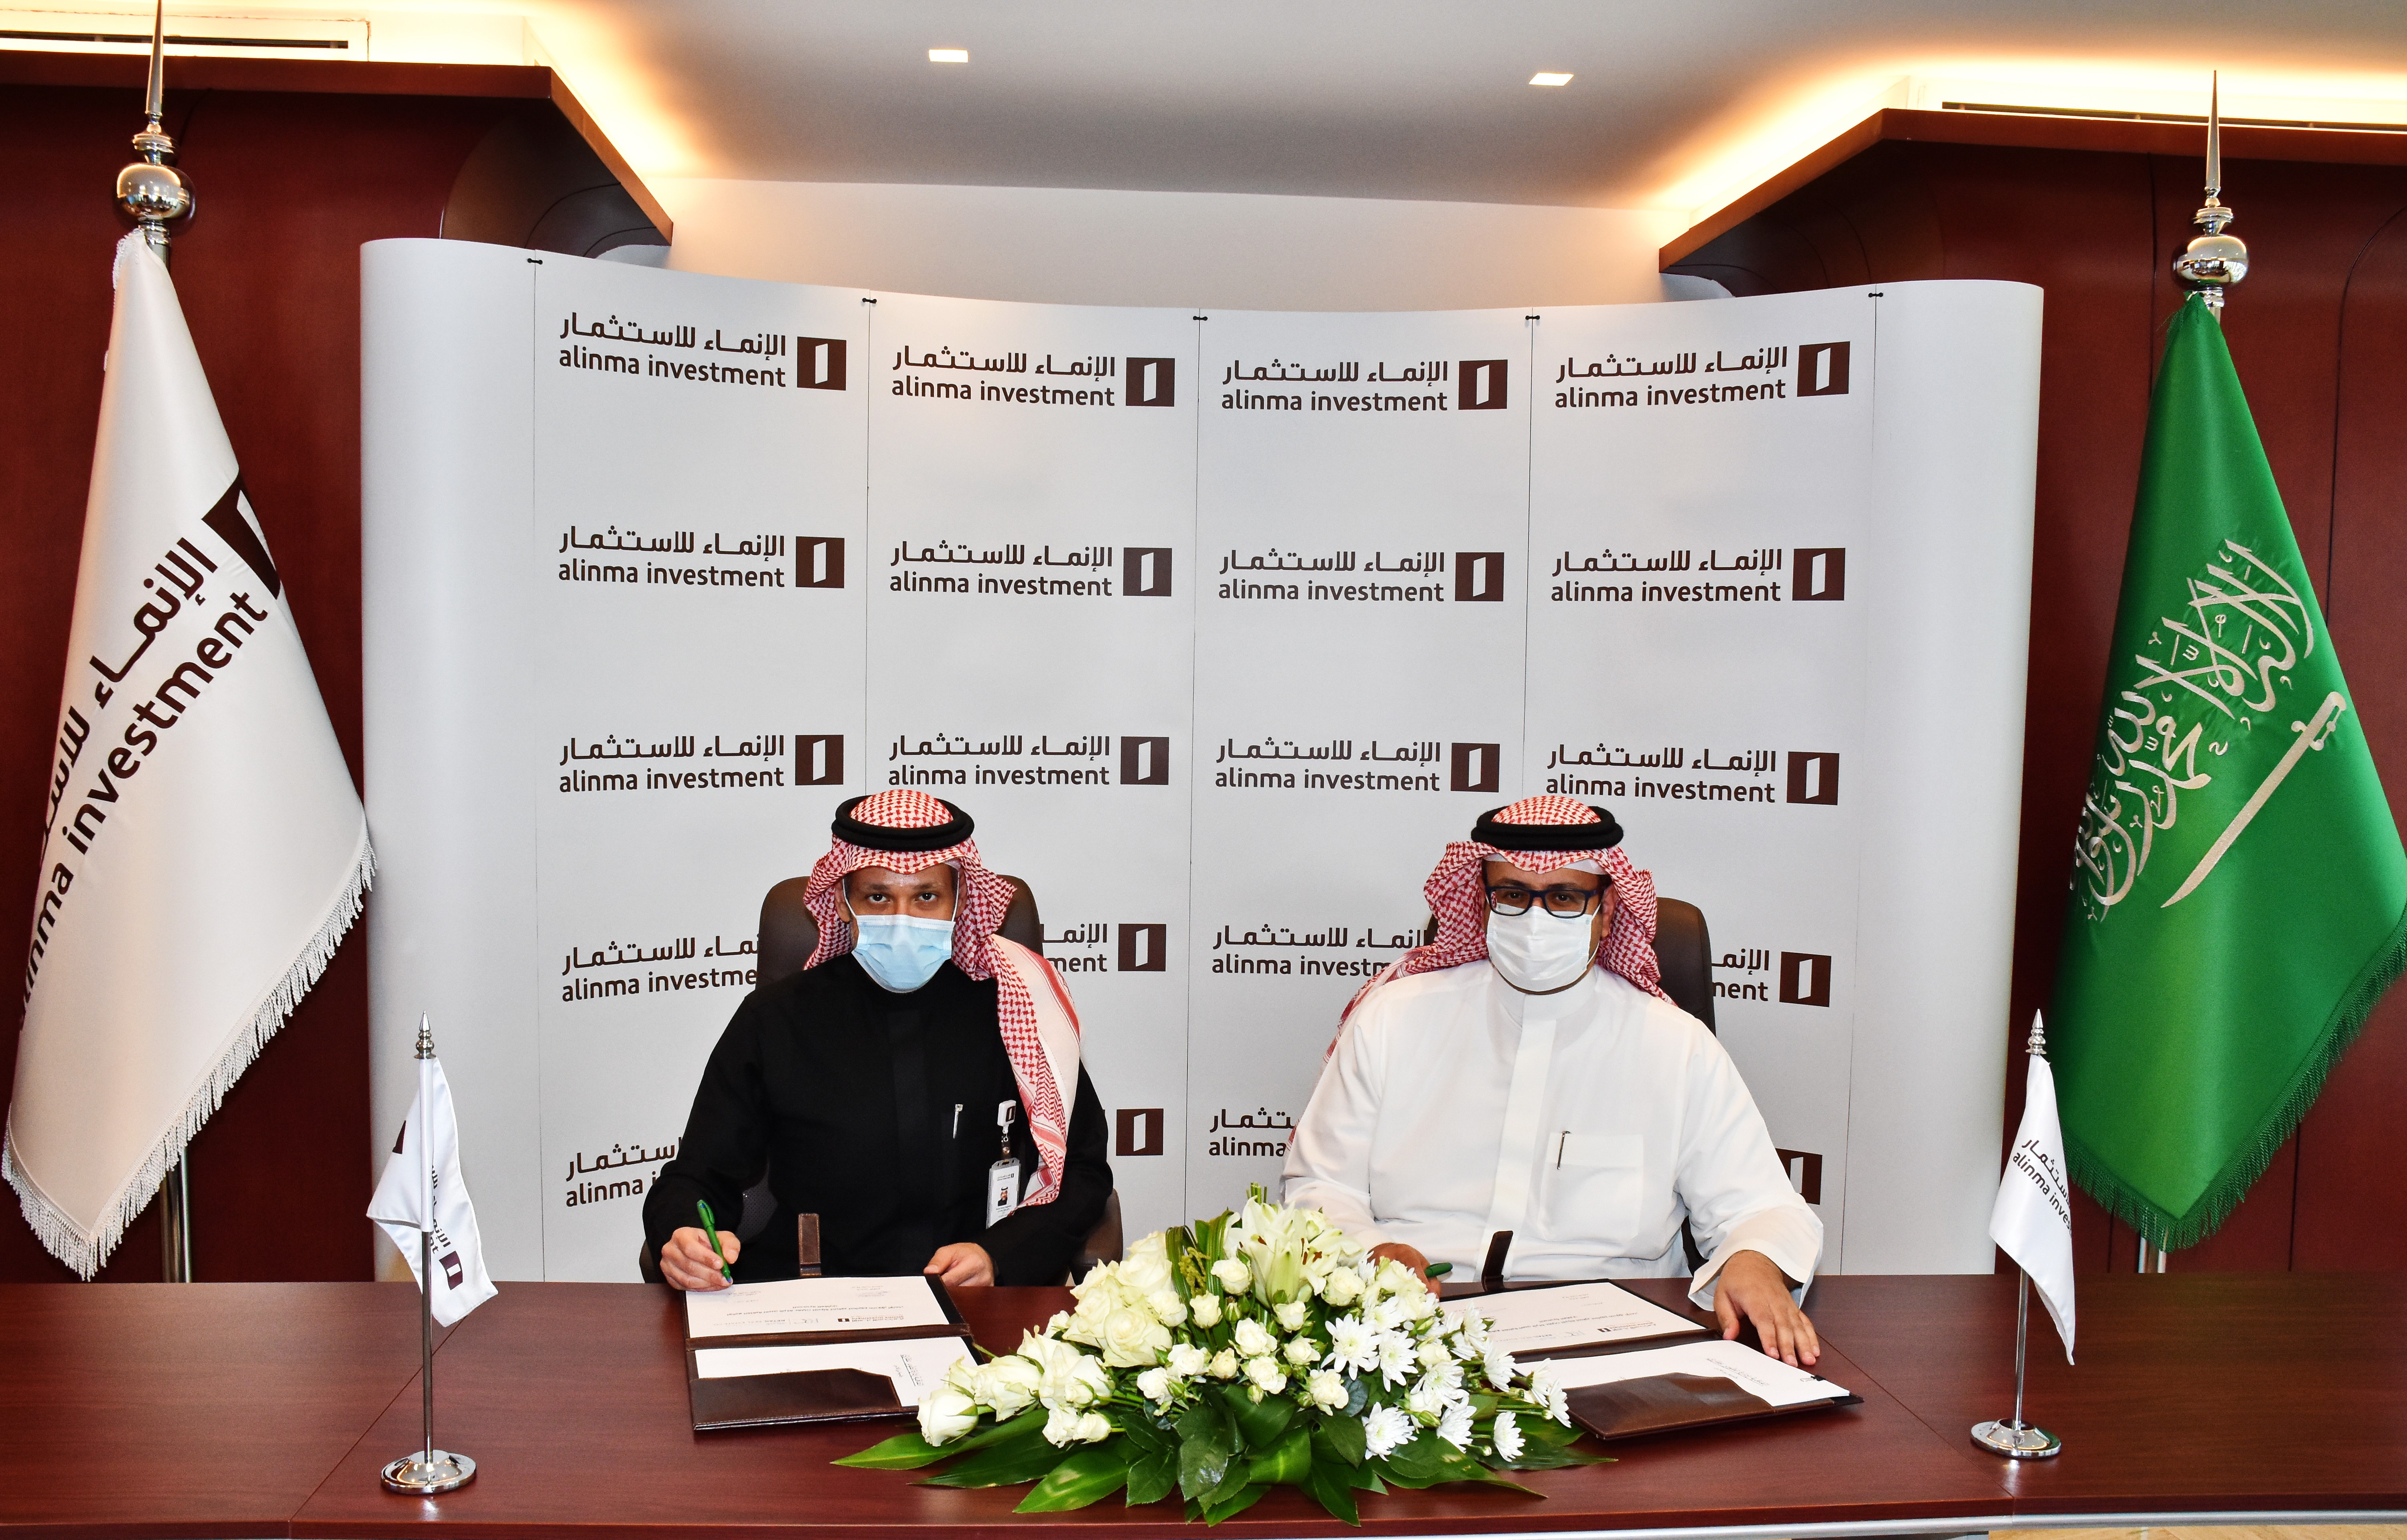 الإنماء للاستثمار توقع اتفاقية تطوير مجمع تجاري في مدينة الرياض بمساحة 41000 مربع